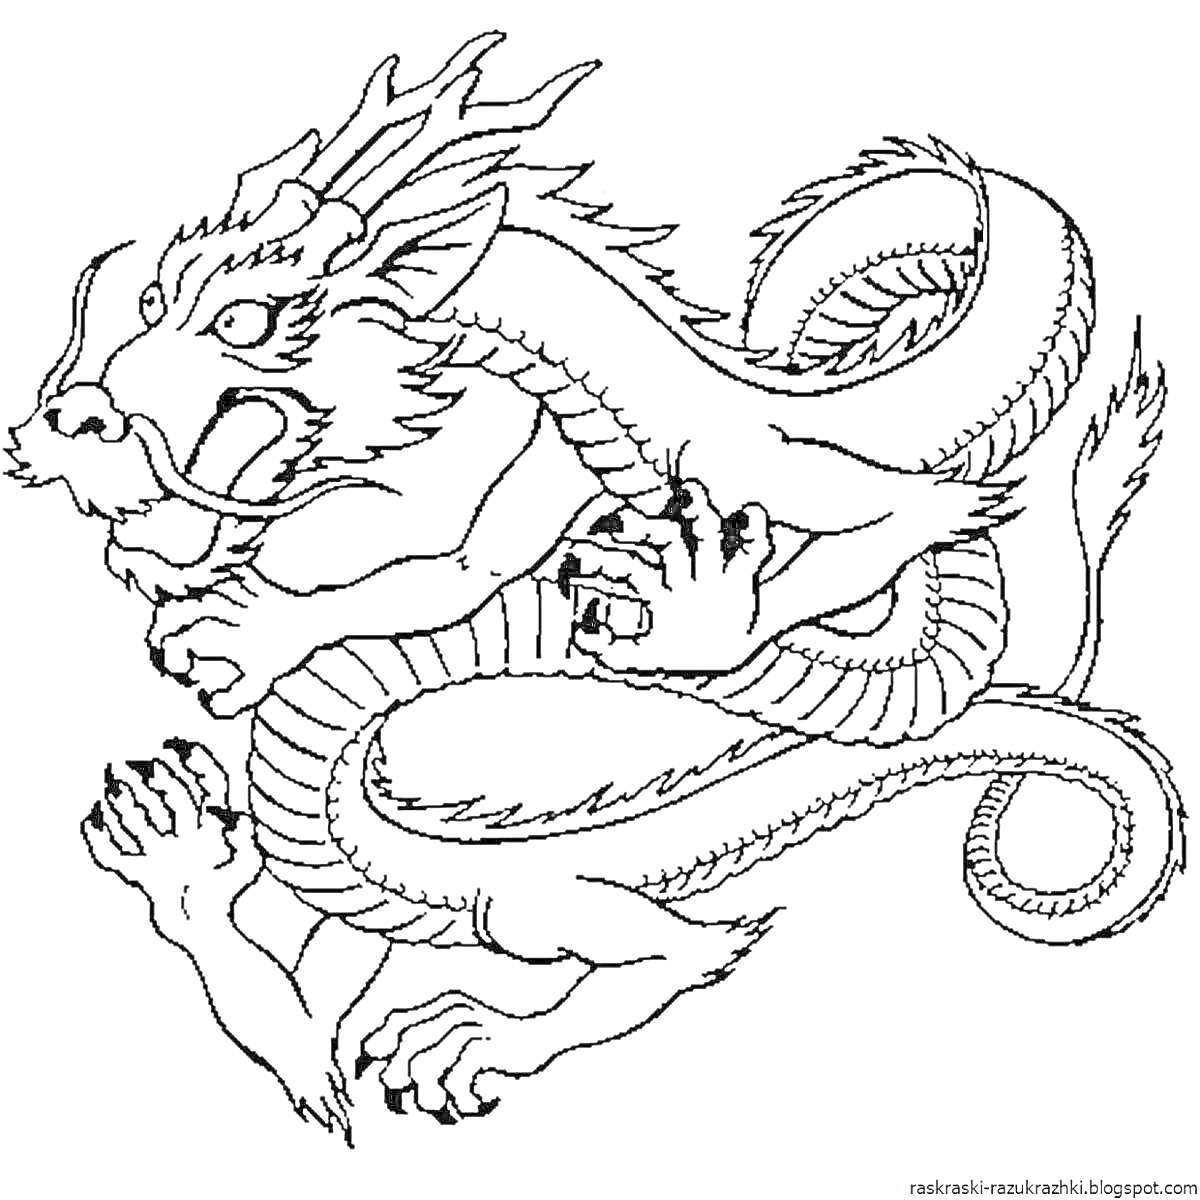 Раскраска Китайский дракон с рогами и когтями, с завитым хвостом